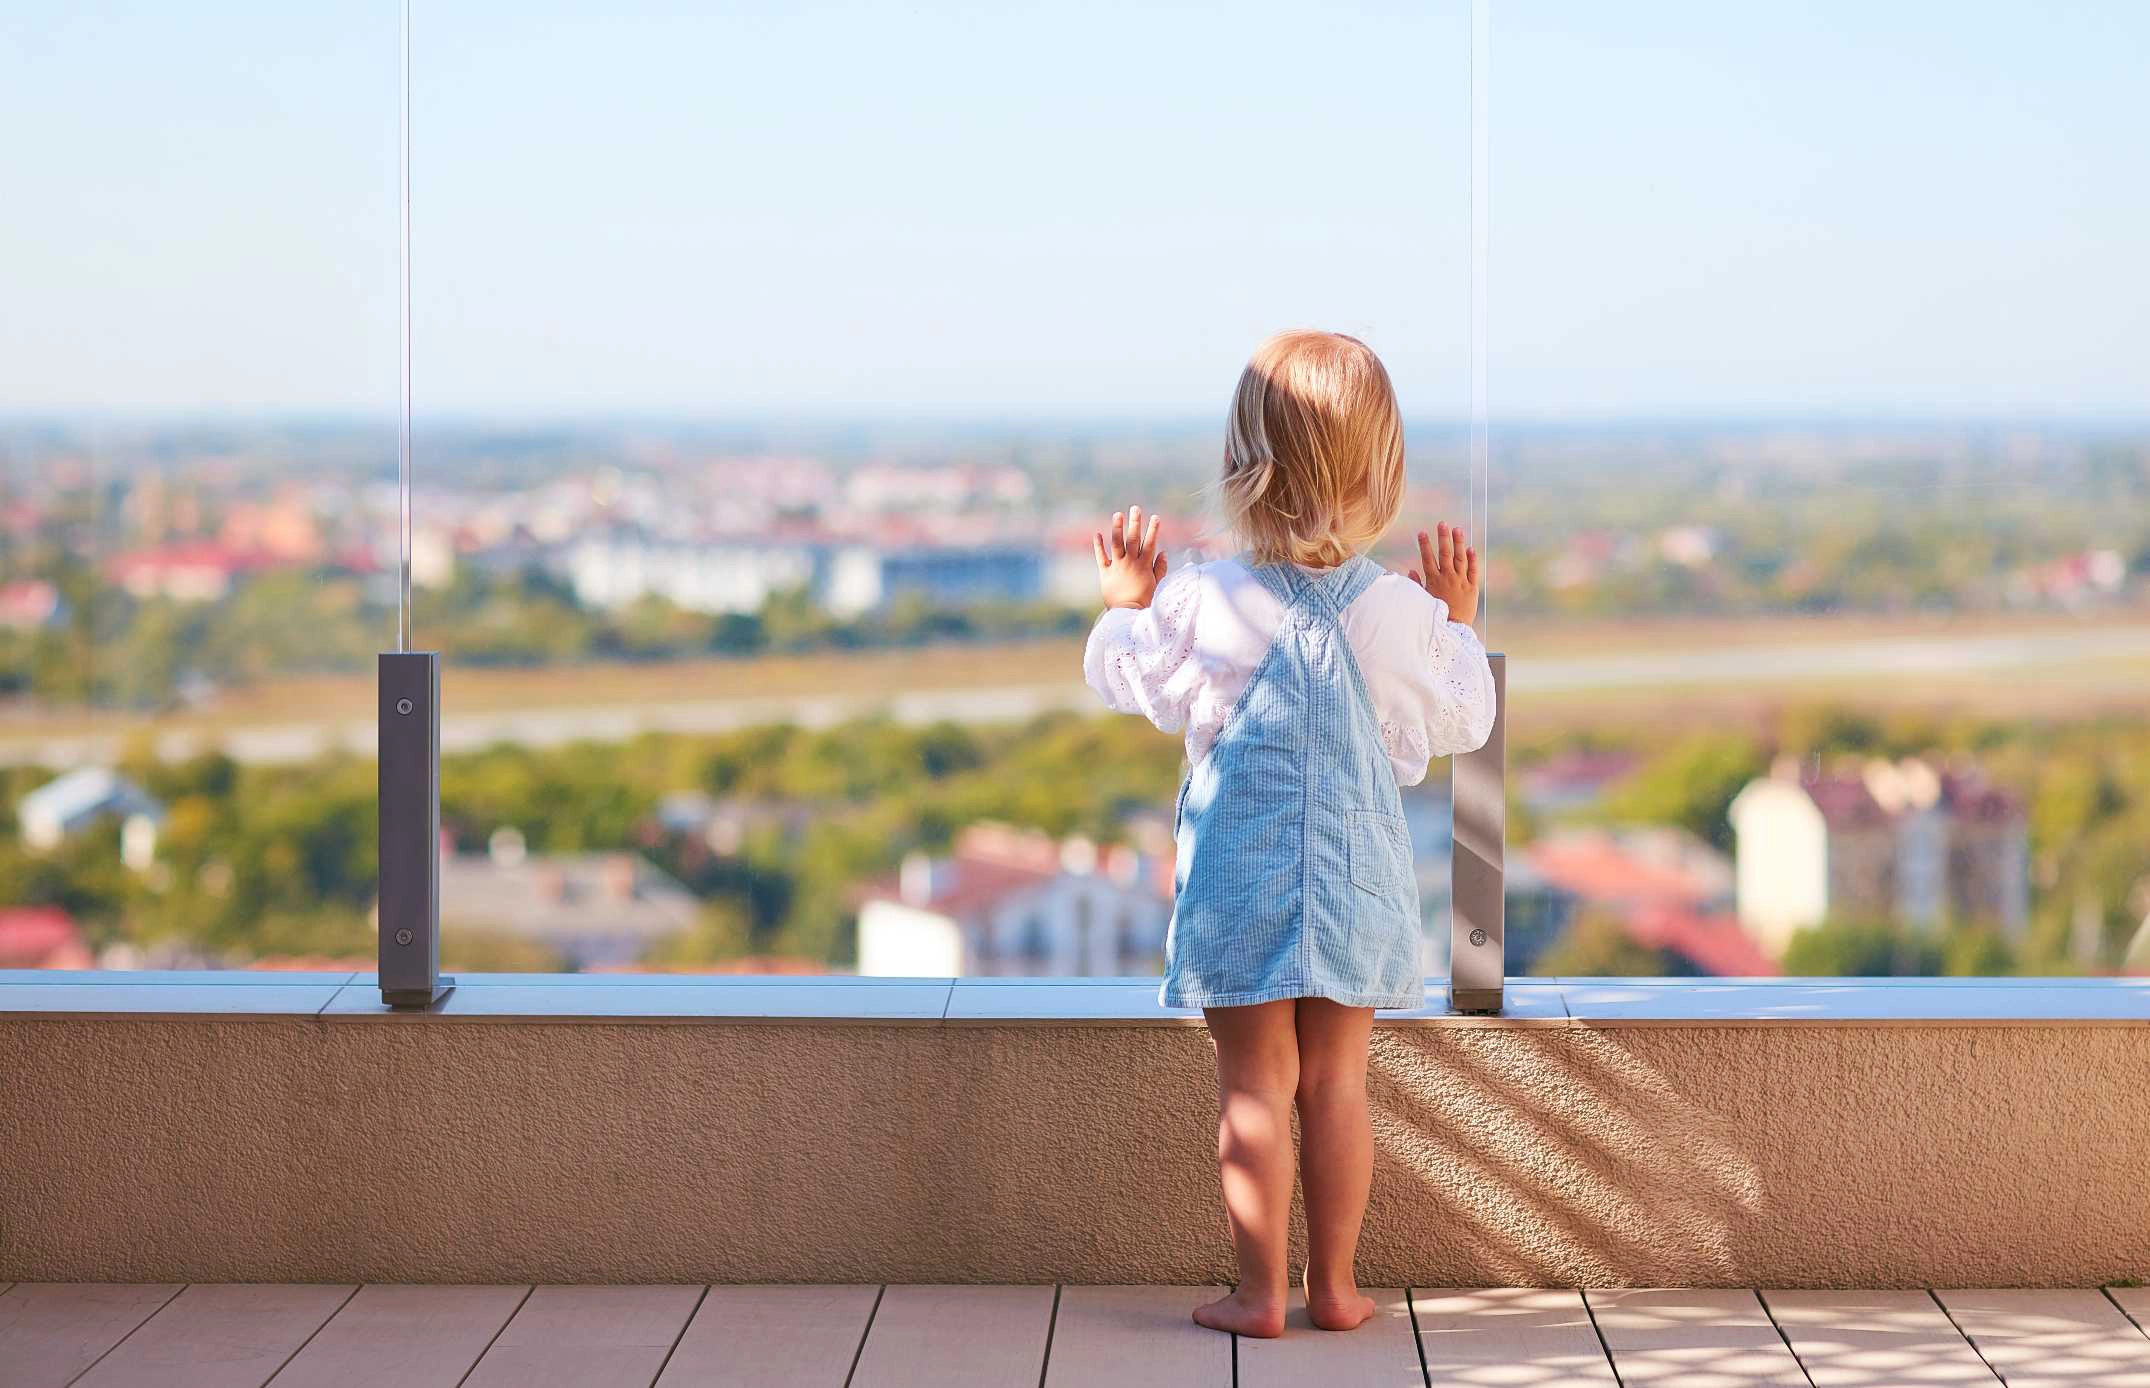 Une jeune enfant regarde le paysage sur un terrasse protégée par un garde corps